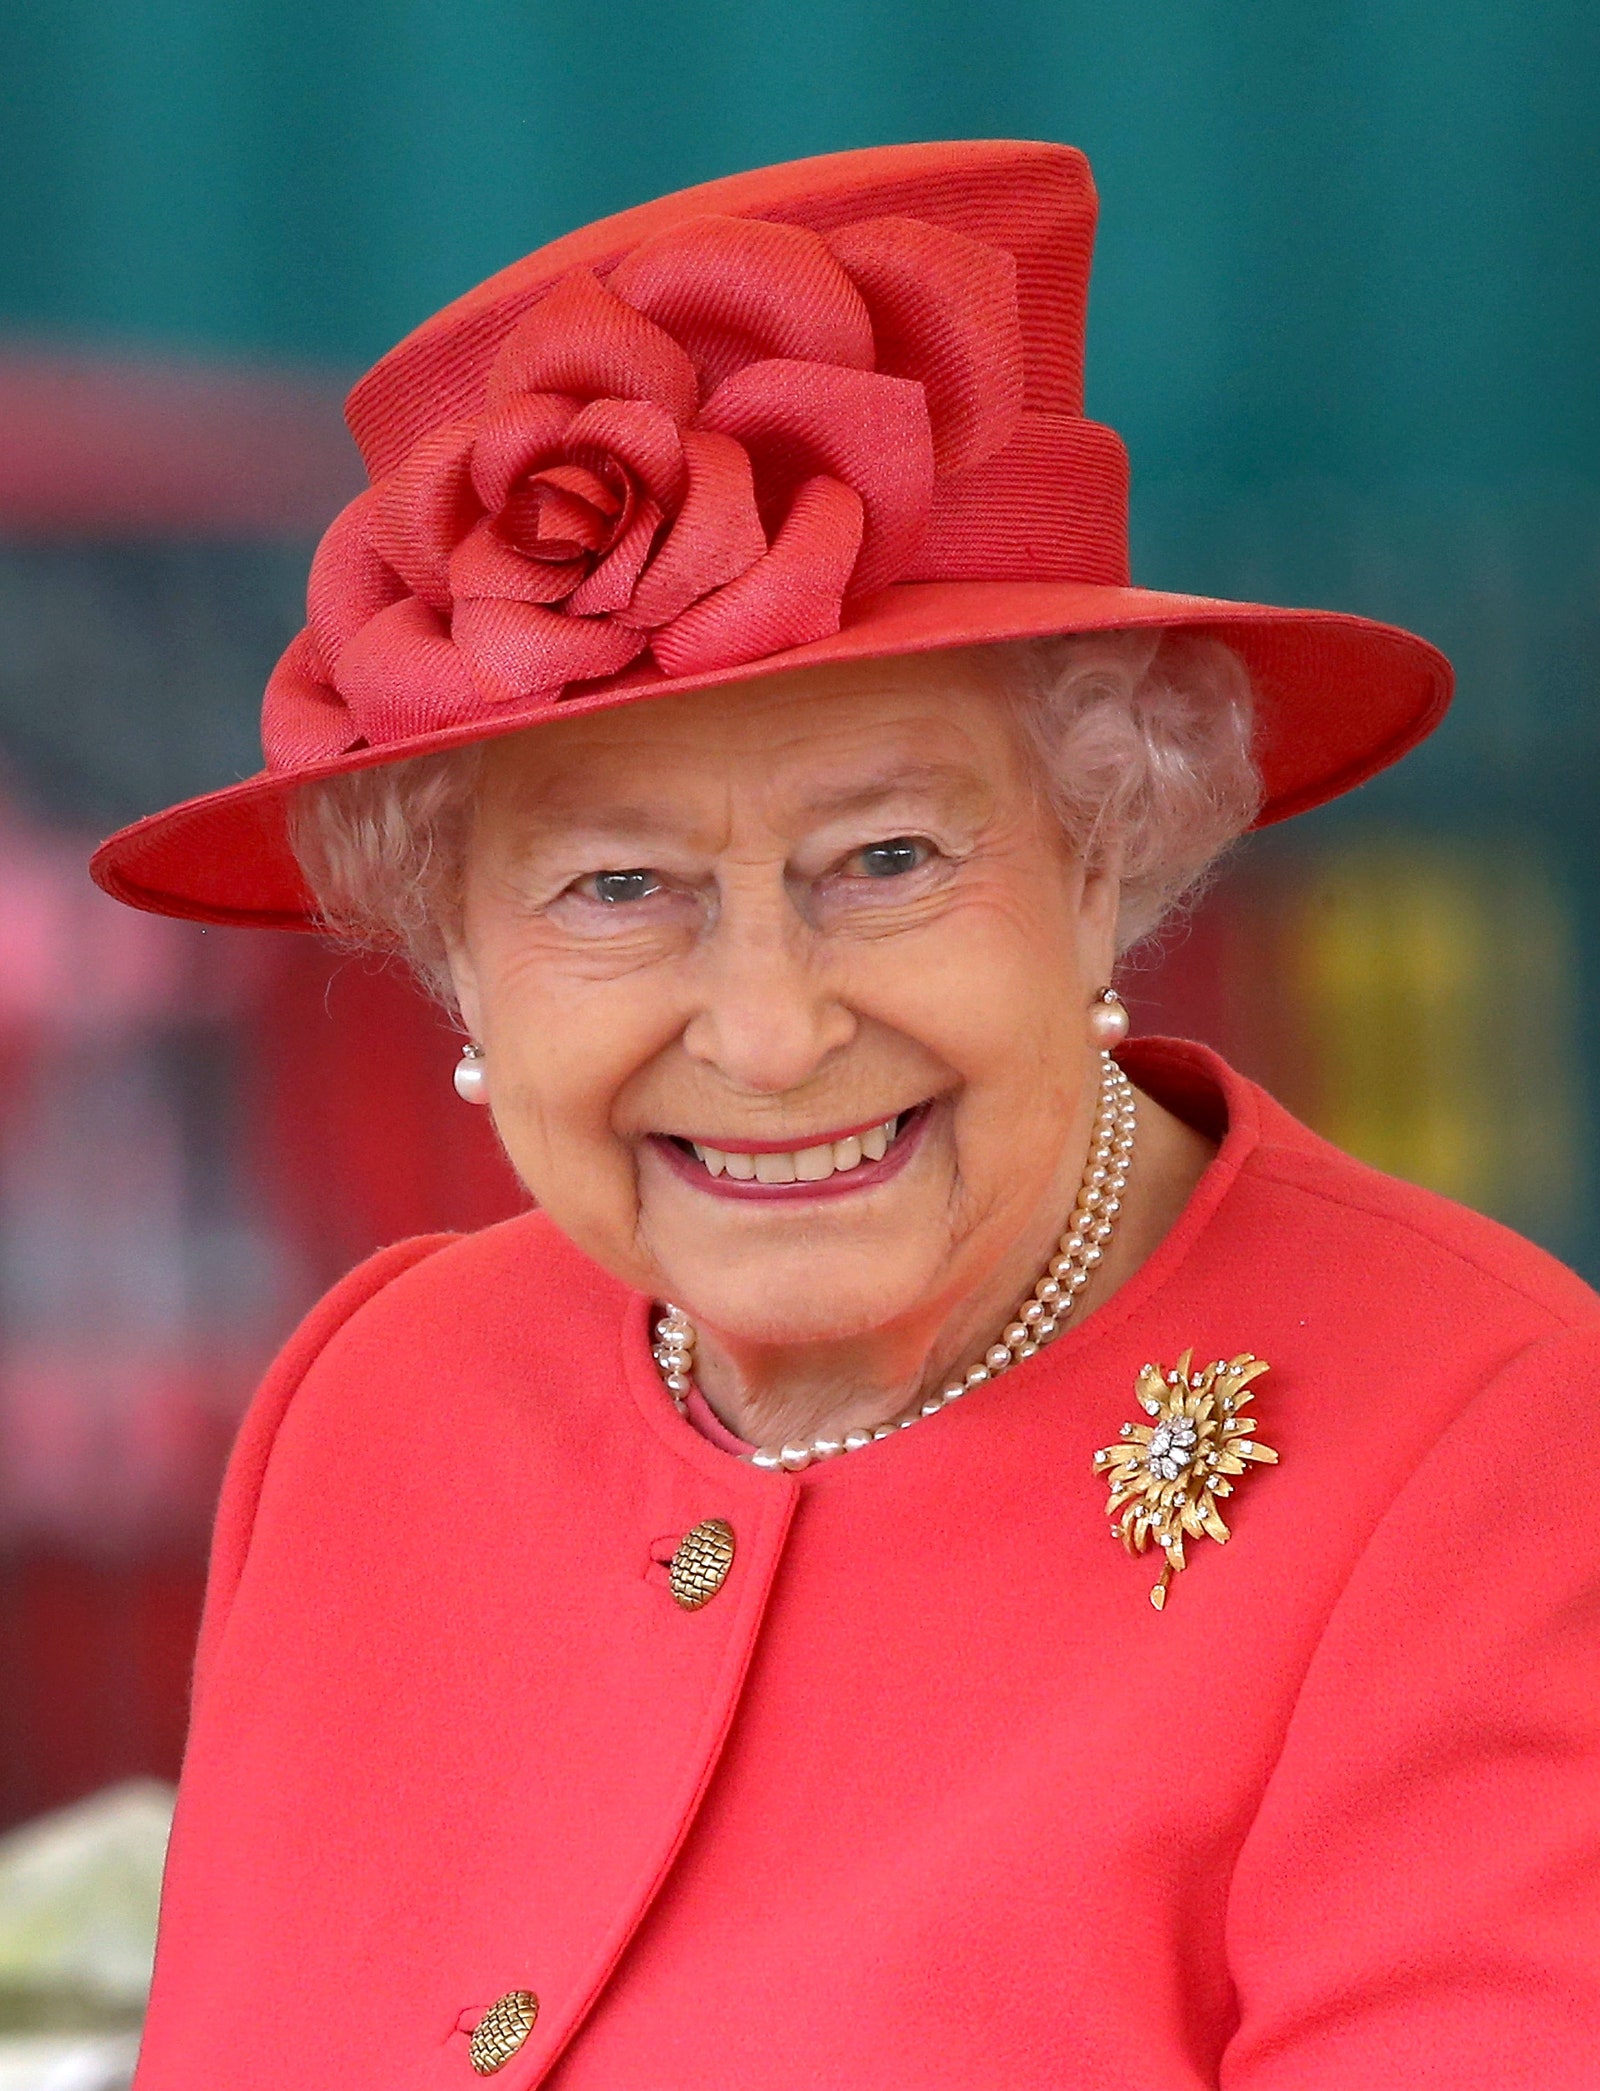 Вакансия в Букингемском дворце королева Елизавета II ищет директора SMMотдела